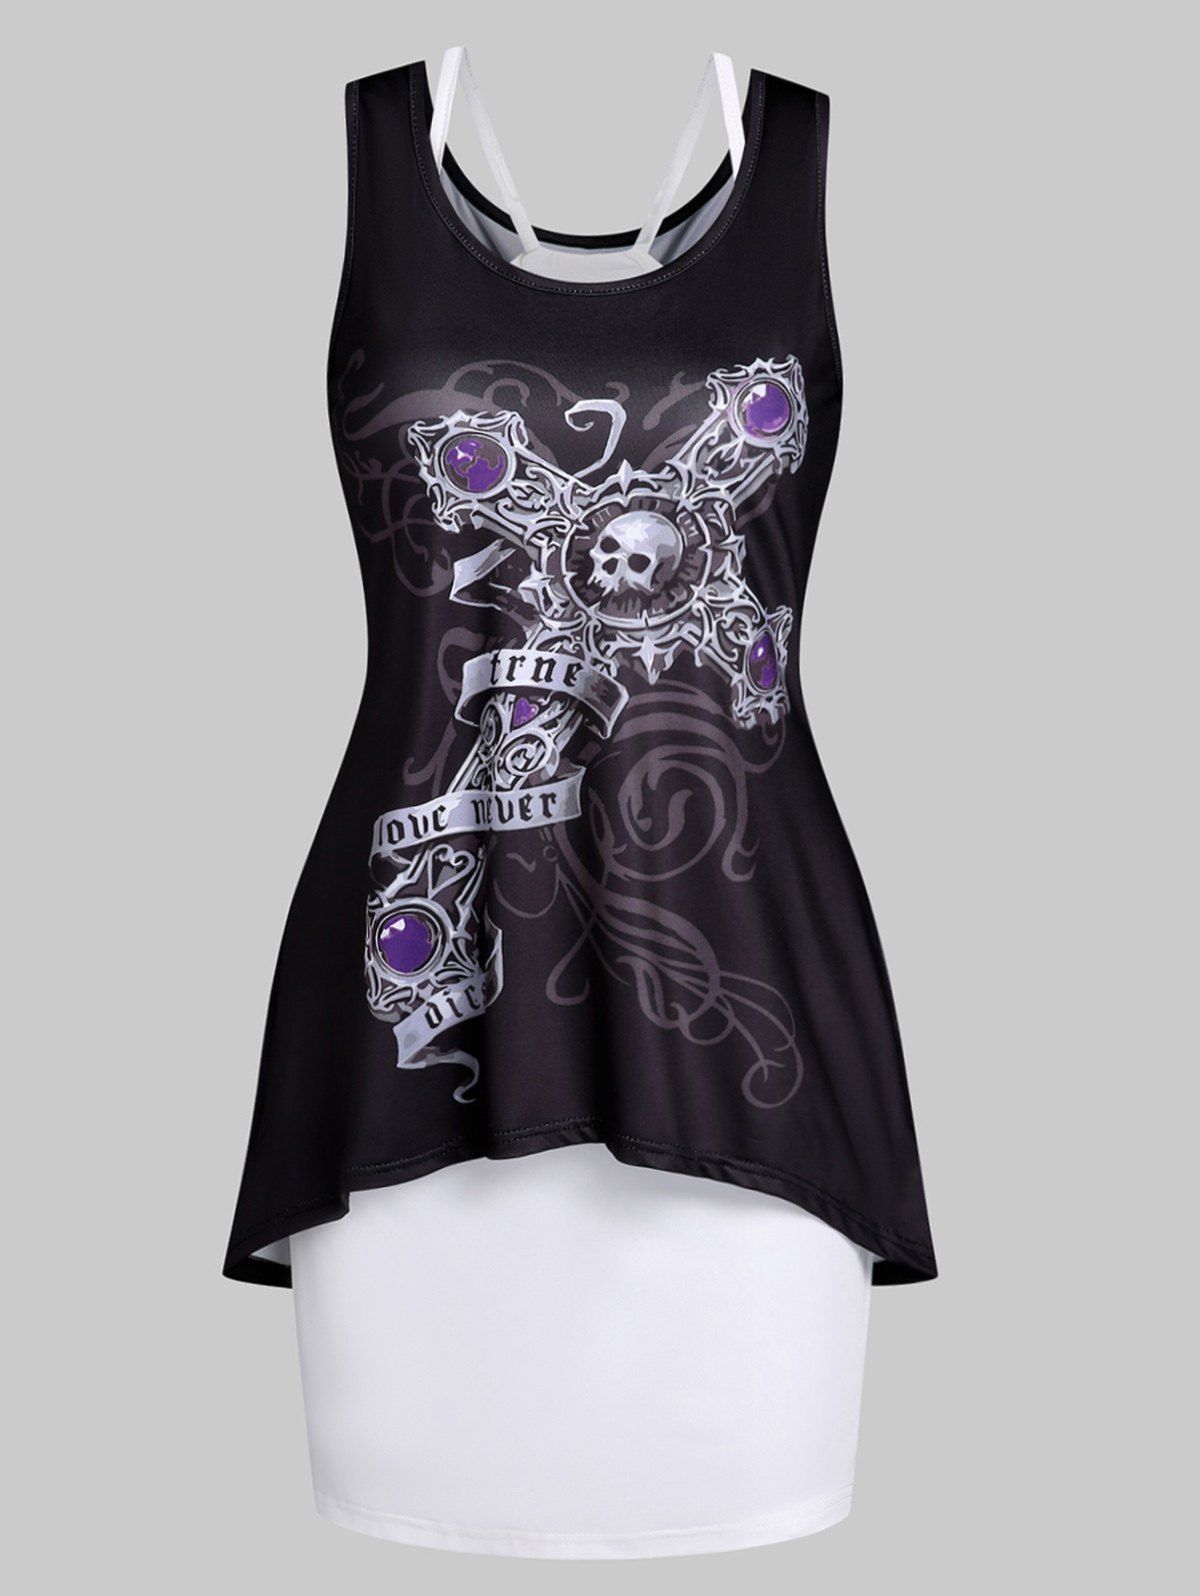 Skull Cross Print Tank Dress And Cami Dress Two Piece Set - BLACK XXL